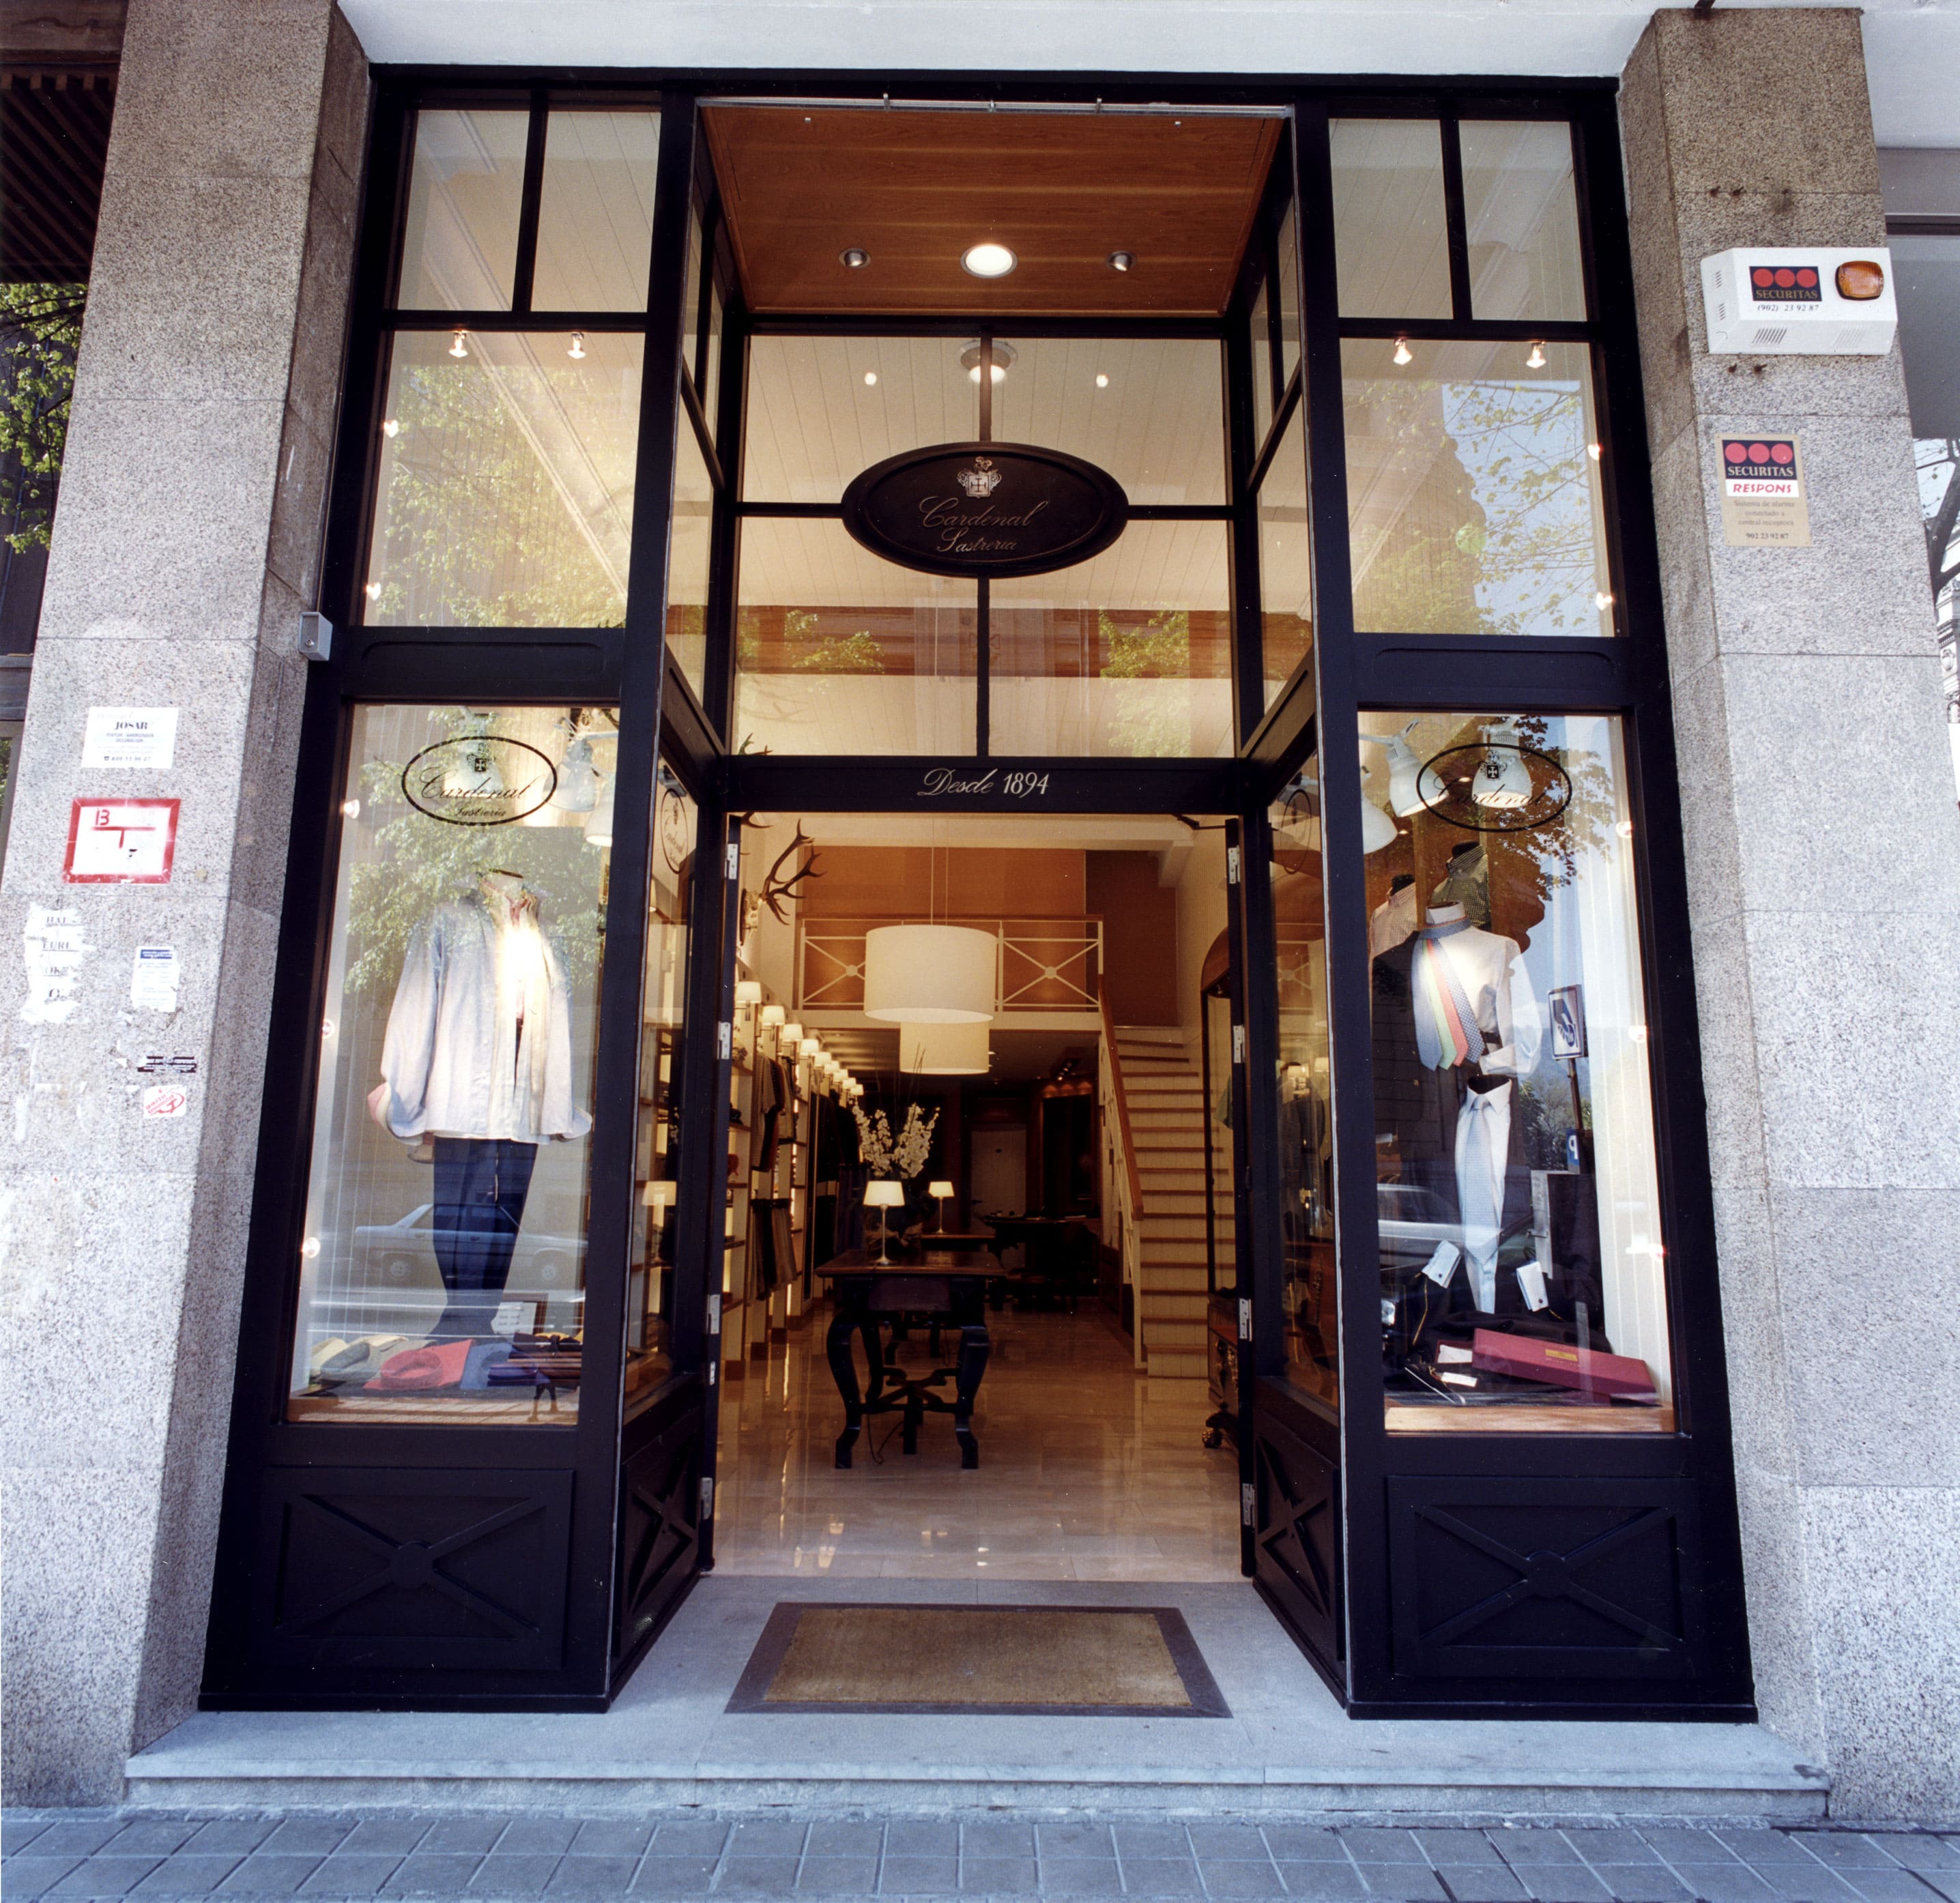 Proyecto de interiorismo comercial para tienda de moda en Bilbao, por Begoña Susaeta